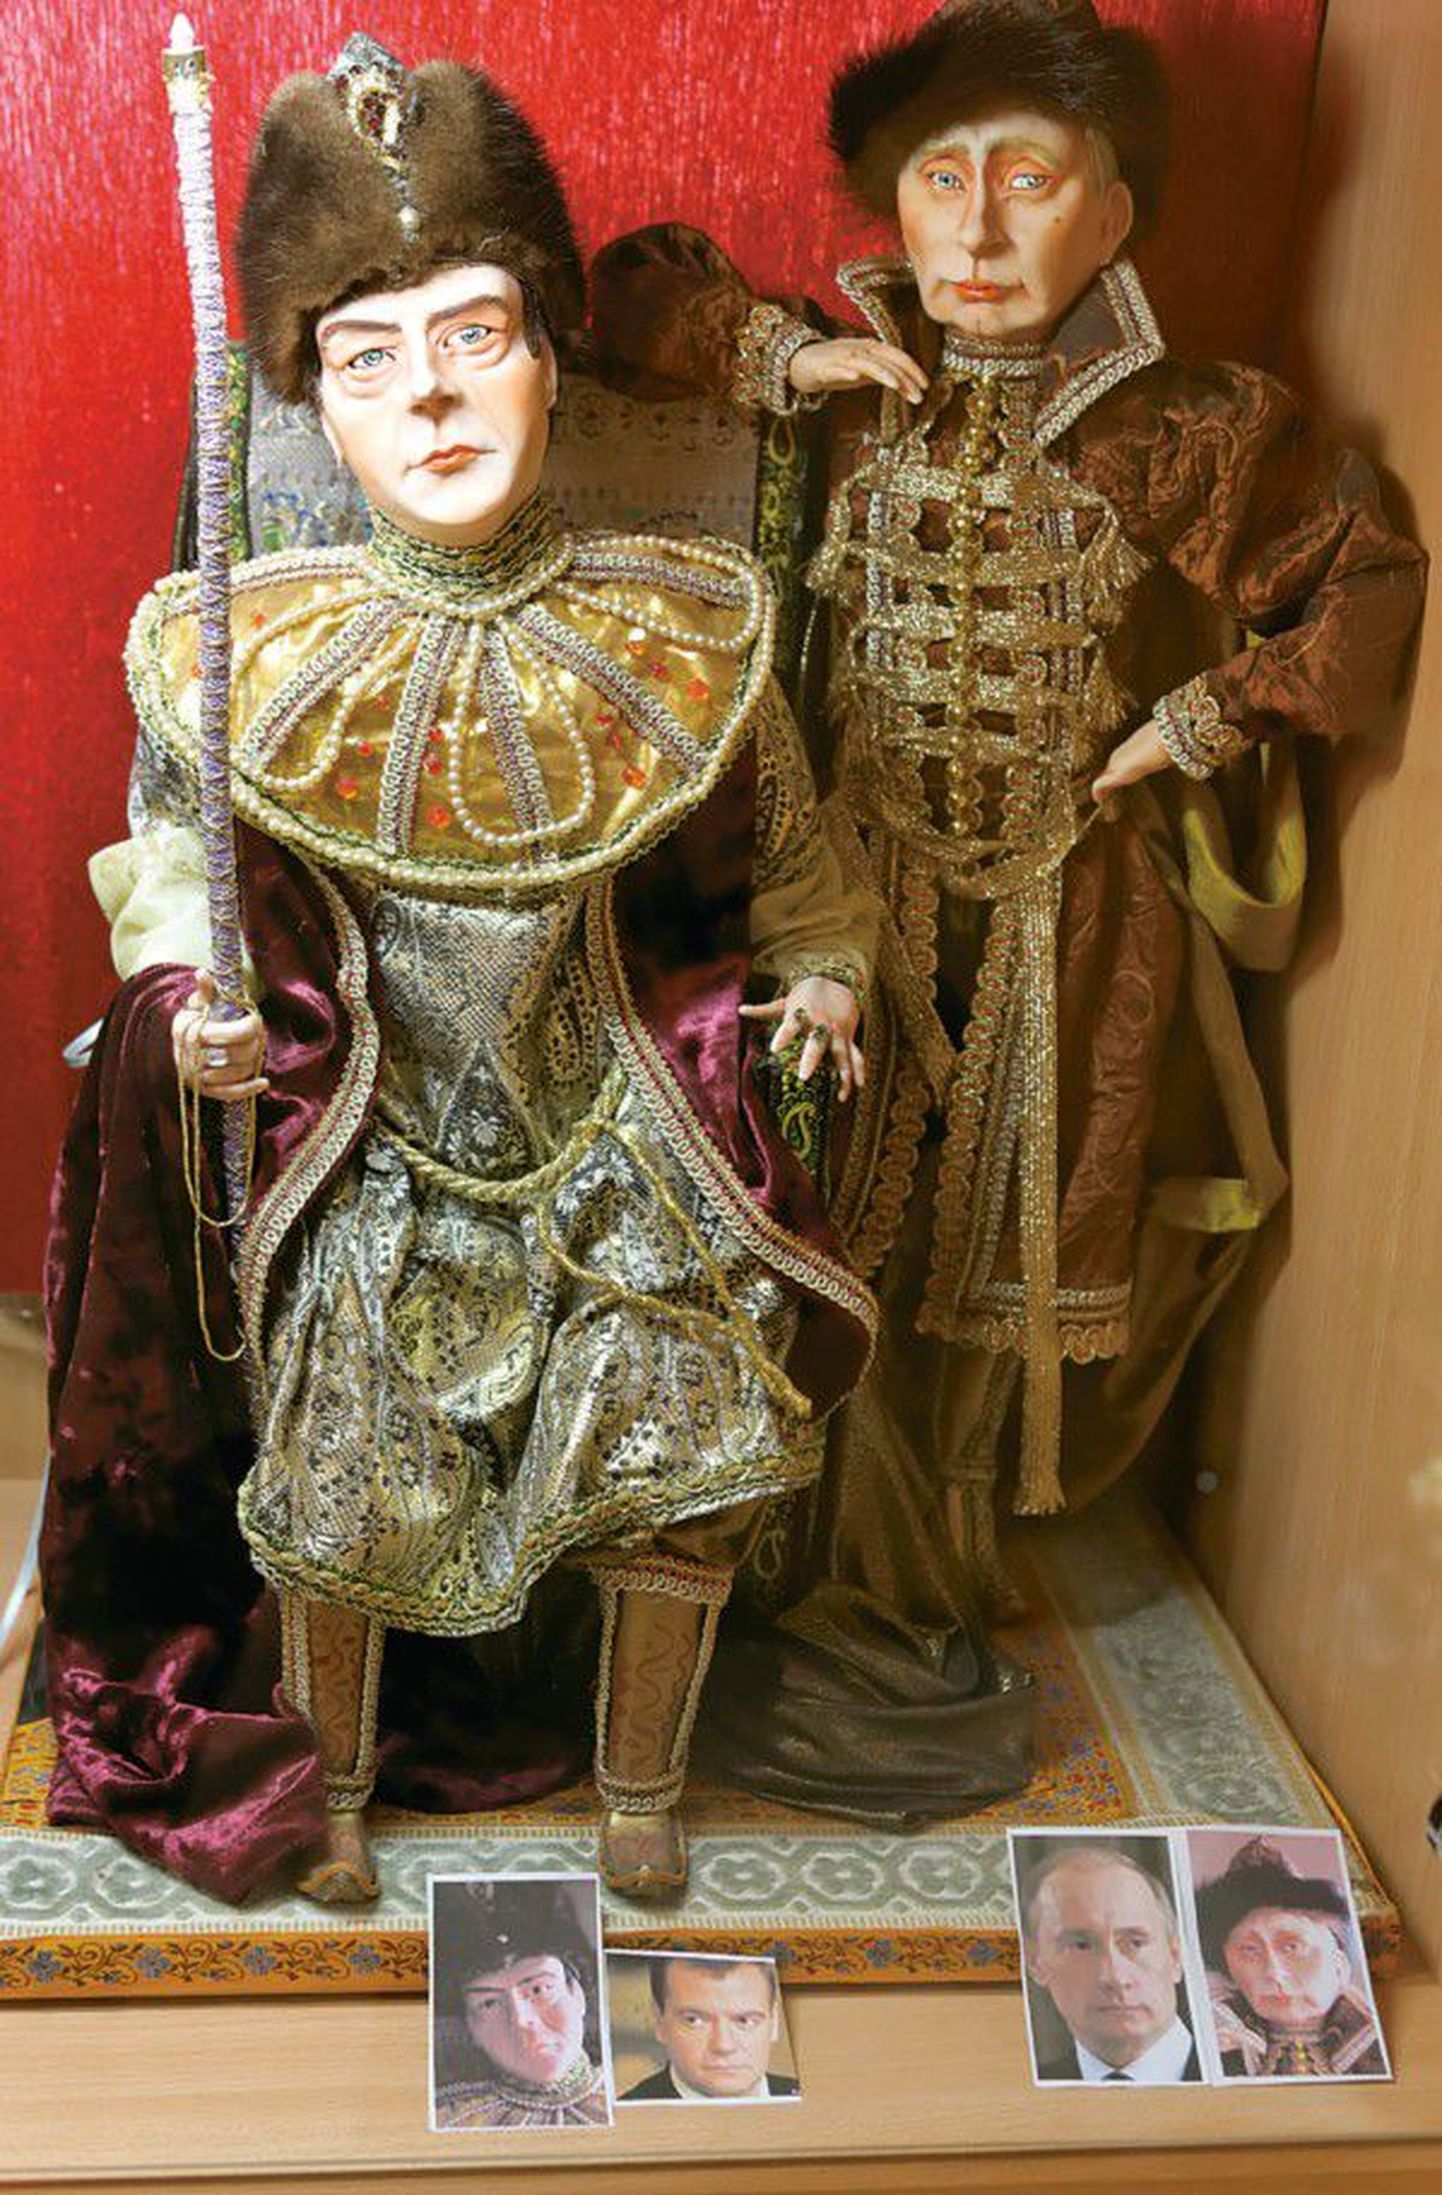 В коллекции королевства авторских кукол есть куклы известных персон, например, президента России Дмитрия Медведева и премьер-министра РФ Владимира Путина.